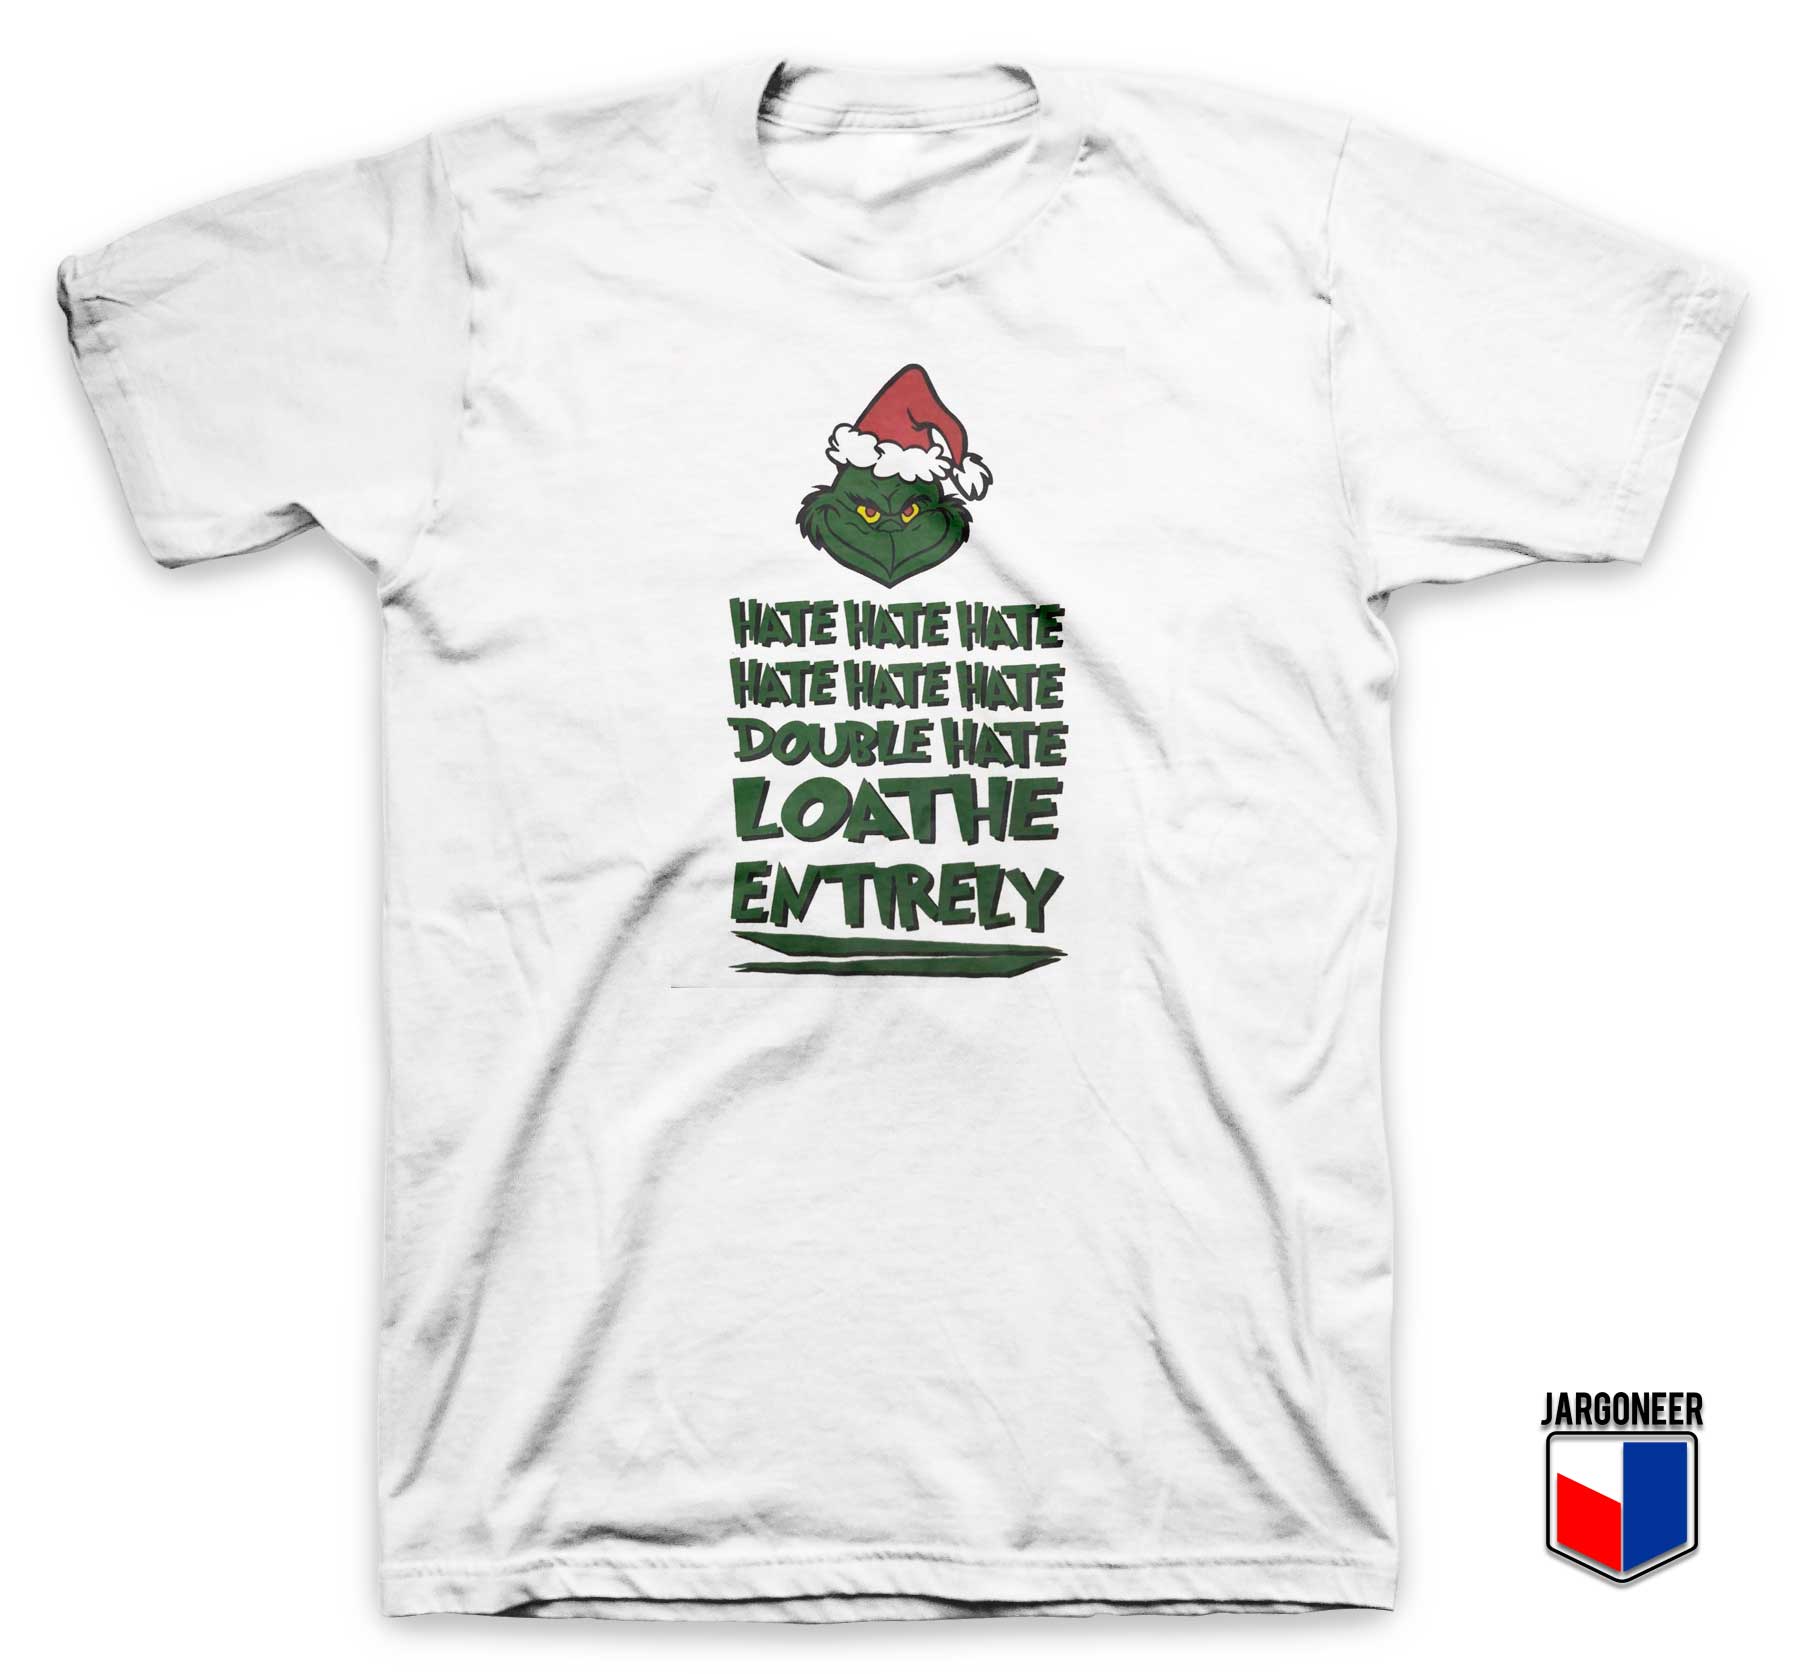 Christmas Grinch Double Hate T Shirt - Shop Unique Graphic Cool Shirt Designs